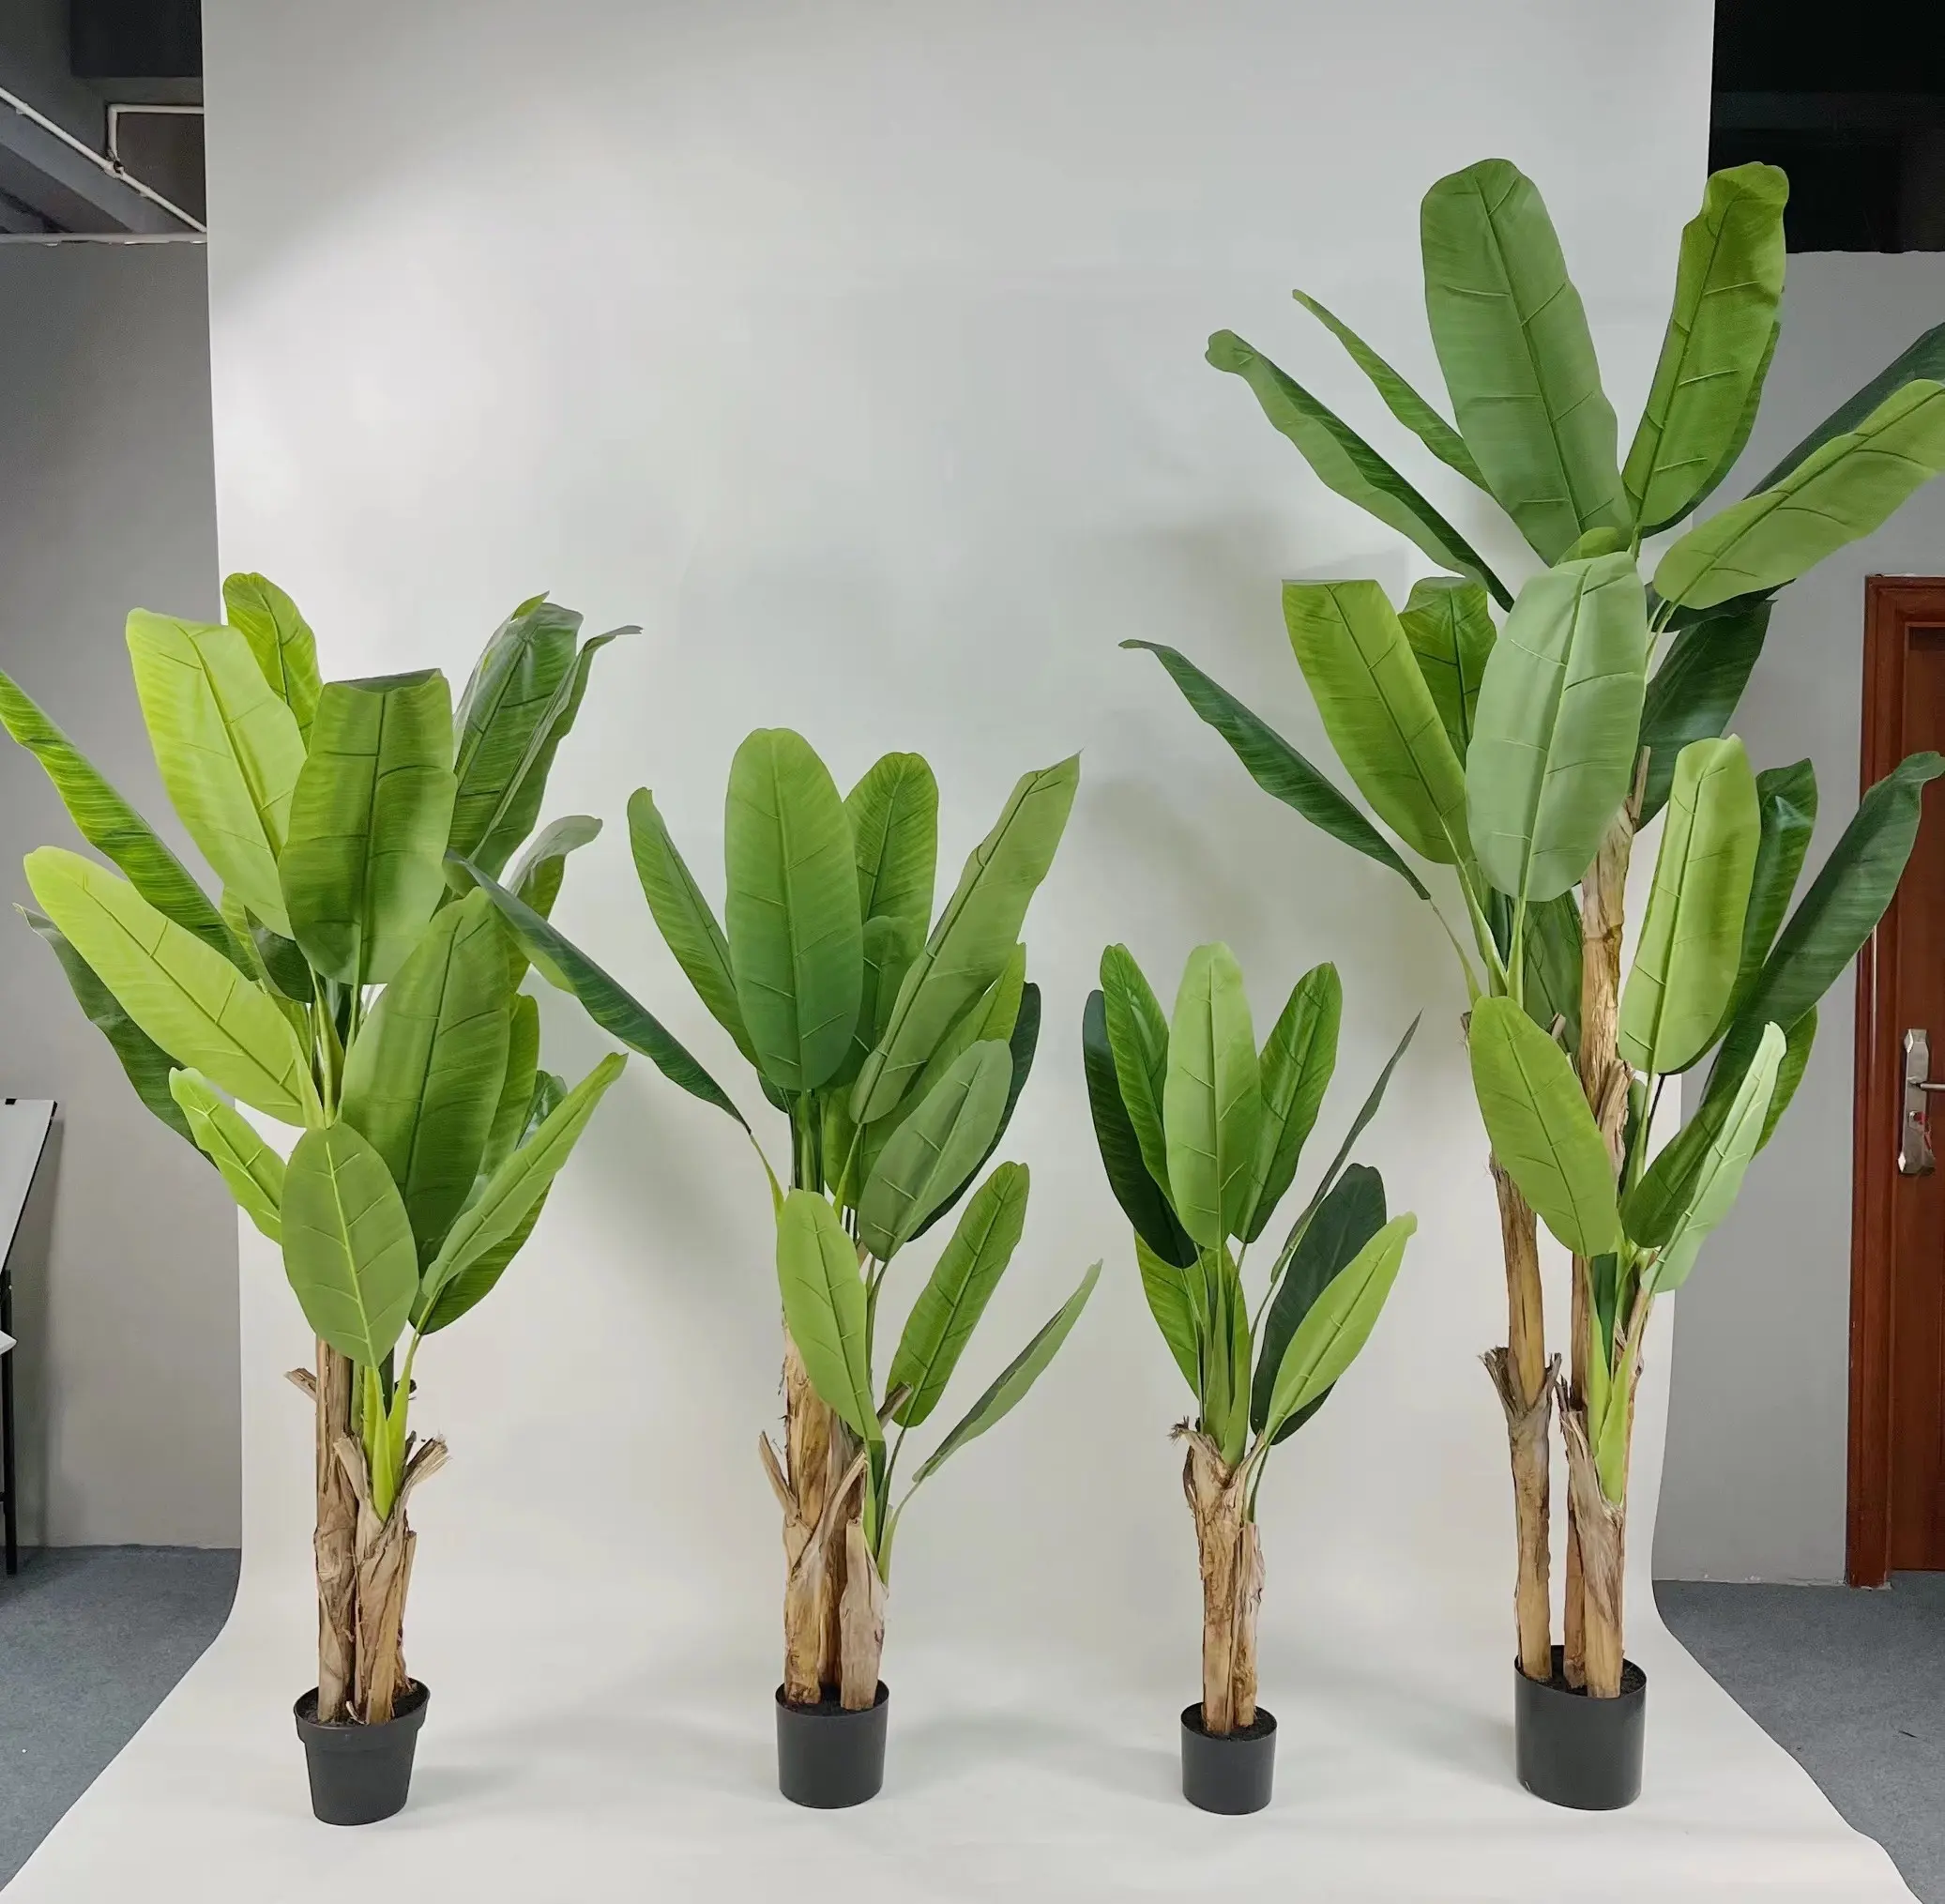 شجرة الموز البلاستيكية عالية الجودة للديكور المنزلي, شجرة الموز ، نباتات اصطناعية بوعاء اصطناعي